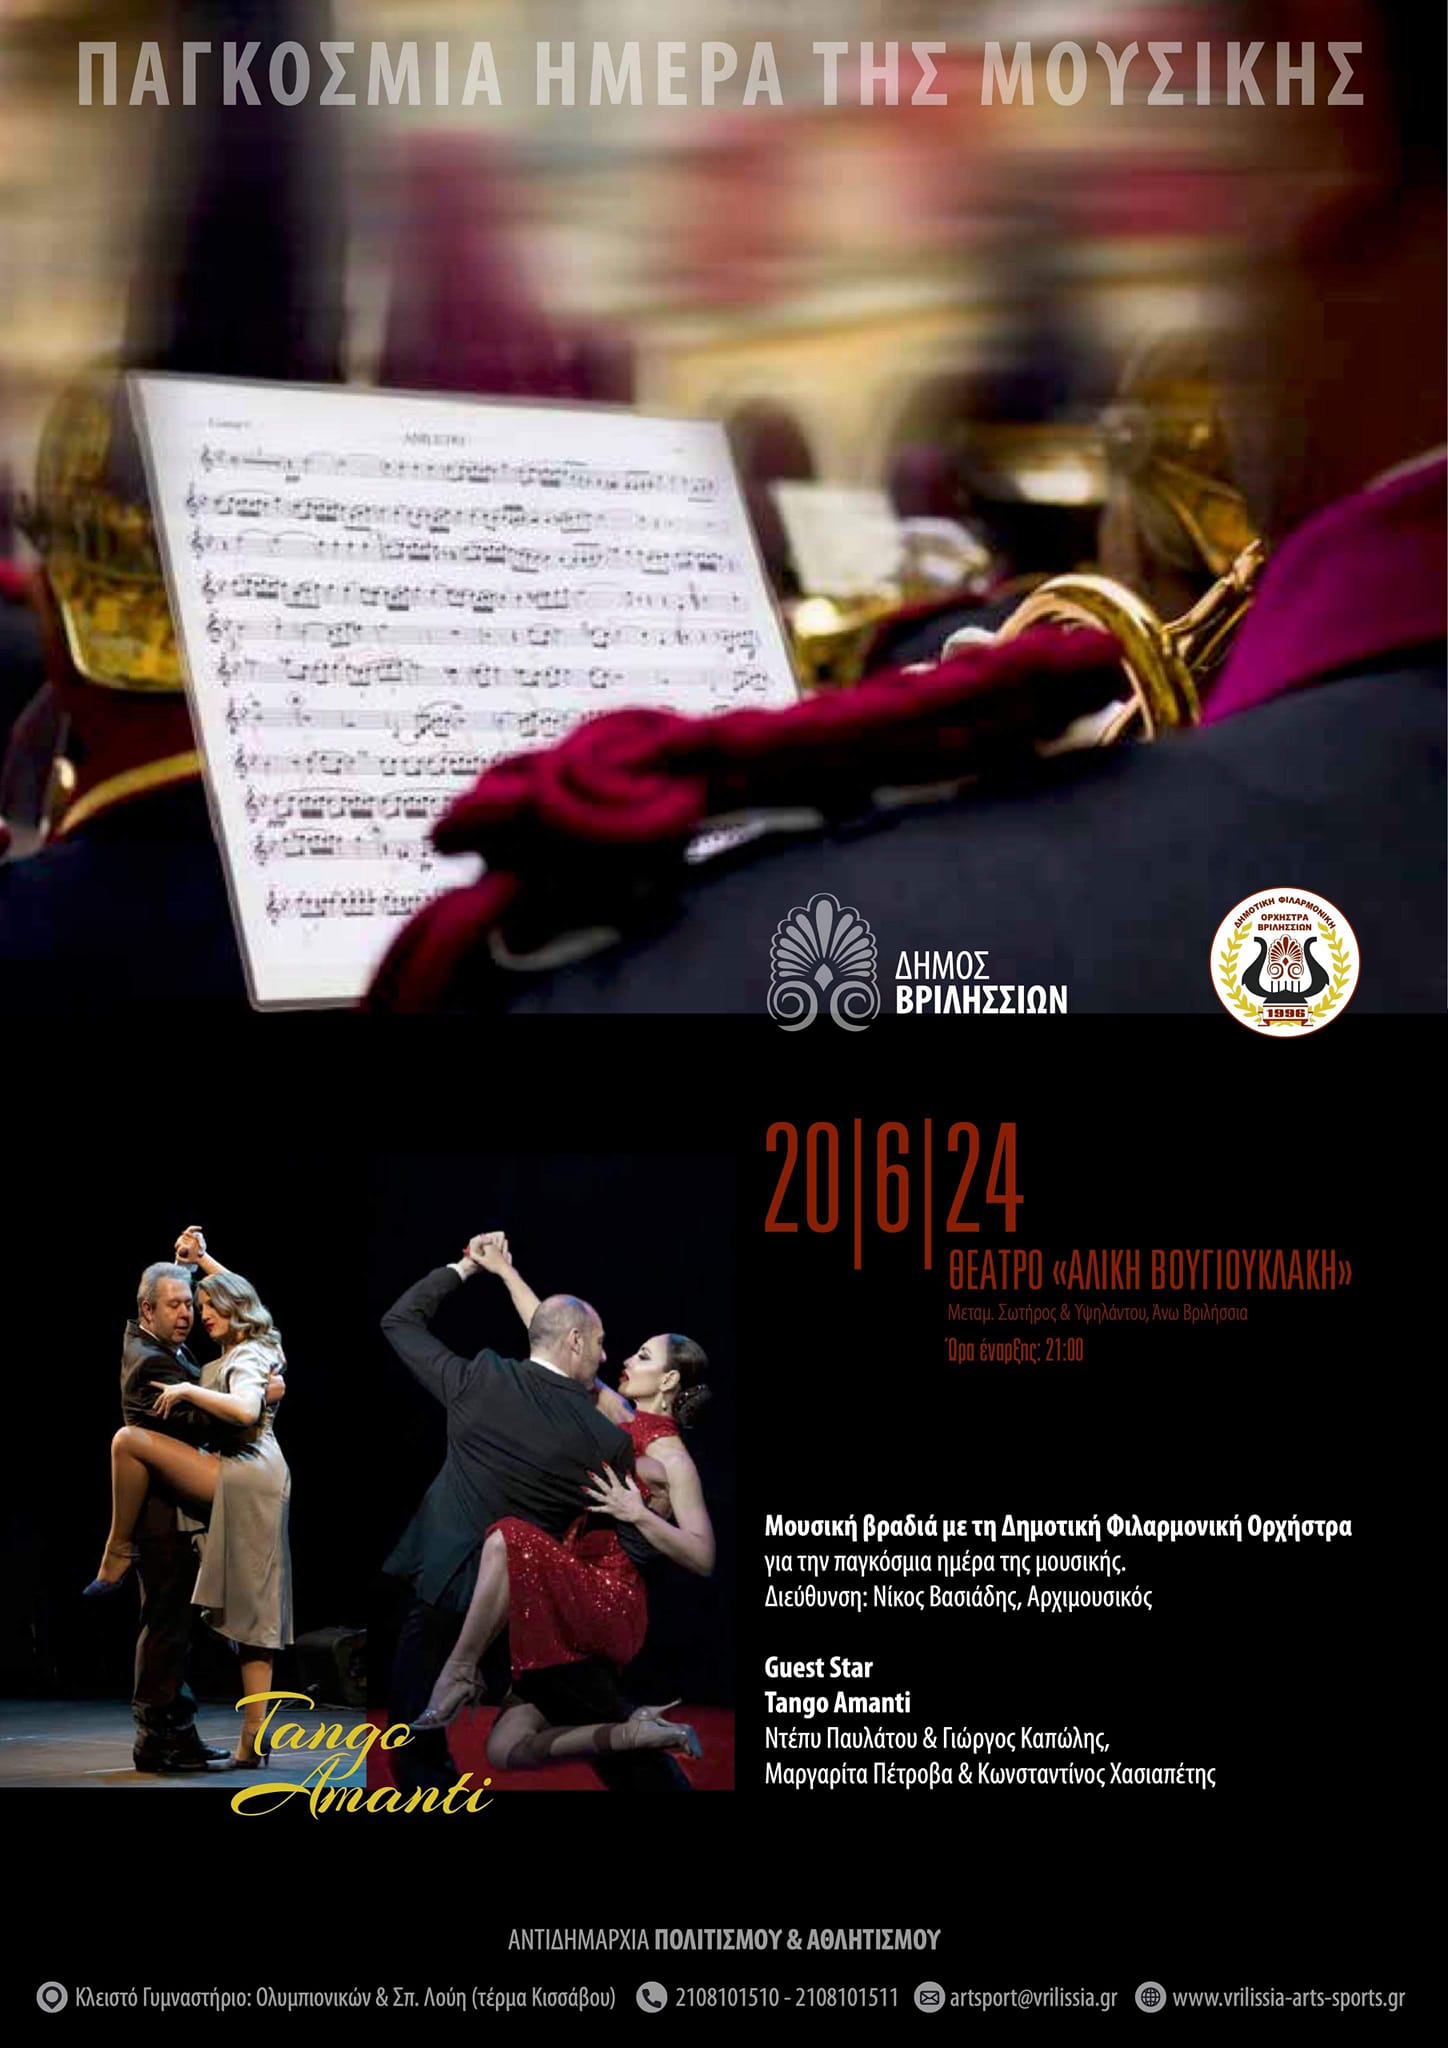 Η Δημοτική Φιλαρμονική Ορχήστρα τιμά την Παγκόσμια Ημέρα Μουσικής με ανοιχτή συναυλία στο θέατρο «Αλ. Βουγιουκλάκη» την Πέμπτη 20/6 στις 21:00